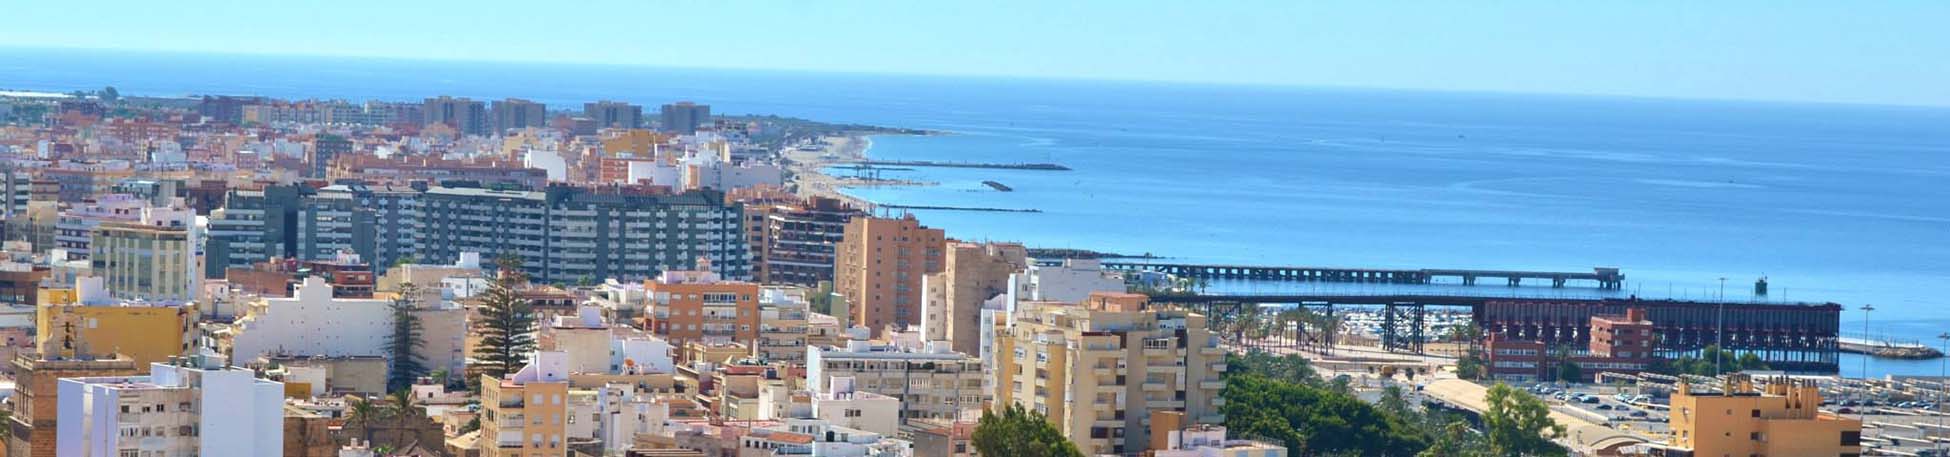 Imagen recurso del puerto de destino Almería para la ruta en ferry Nador - Almería